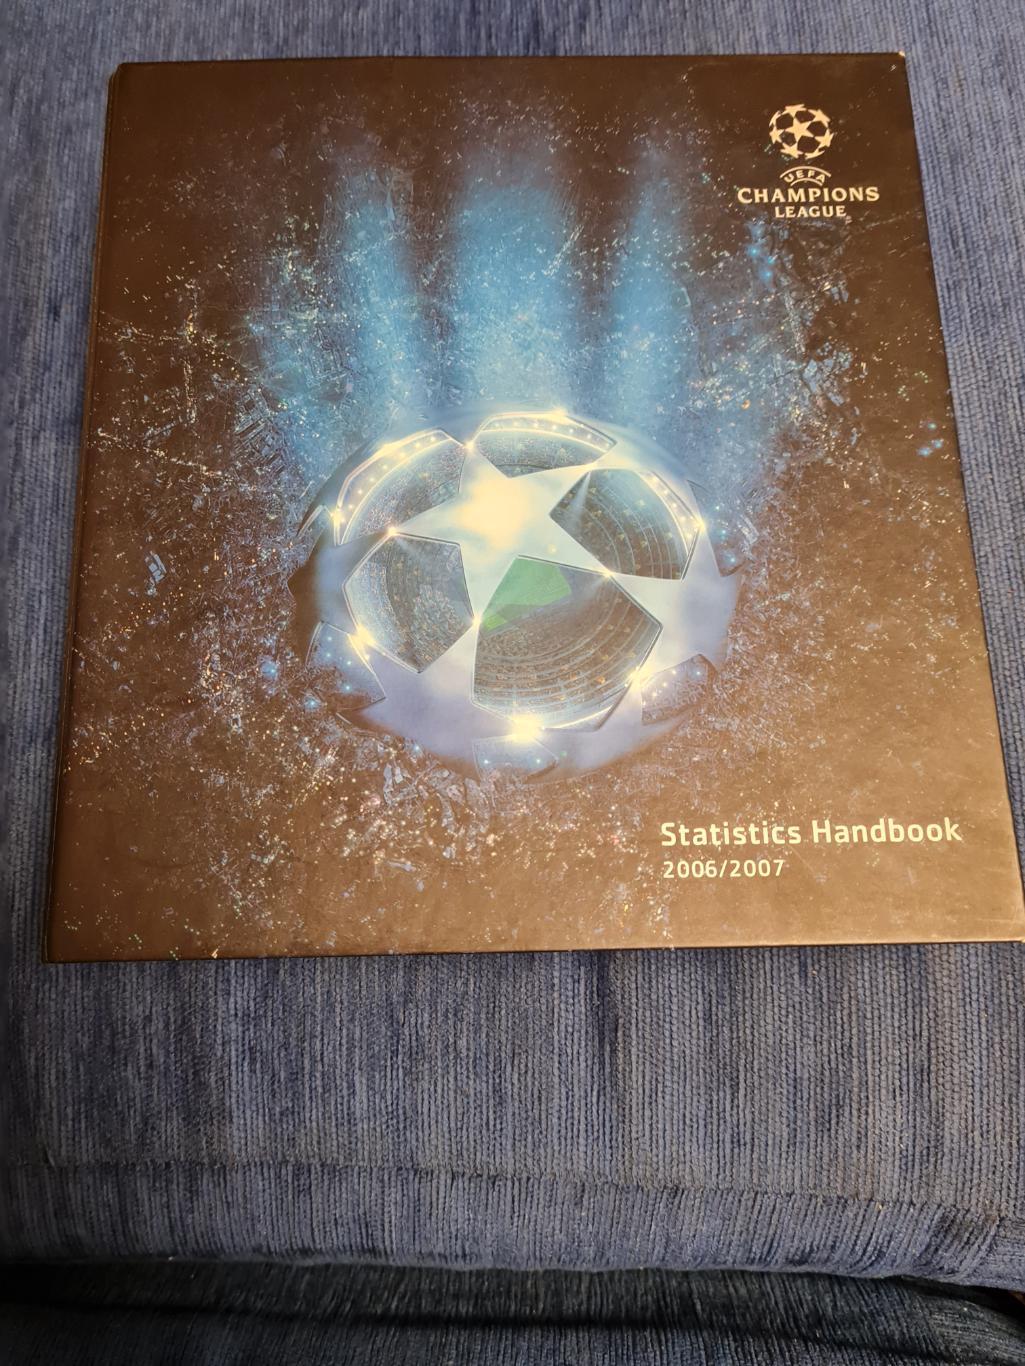 Statistic Handbook. 2006/2007.Лига чемпионов. Спартак.